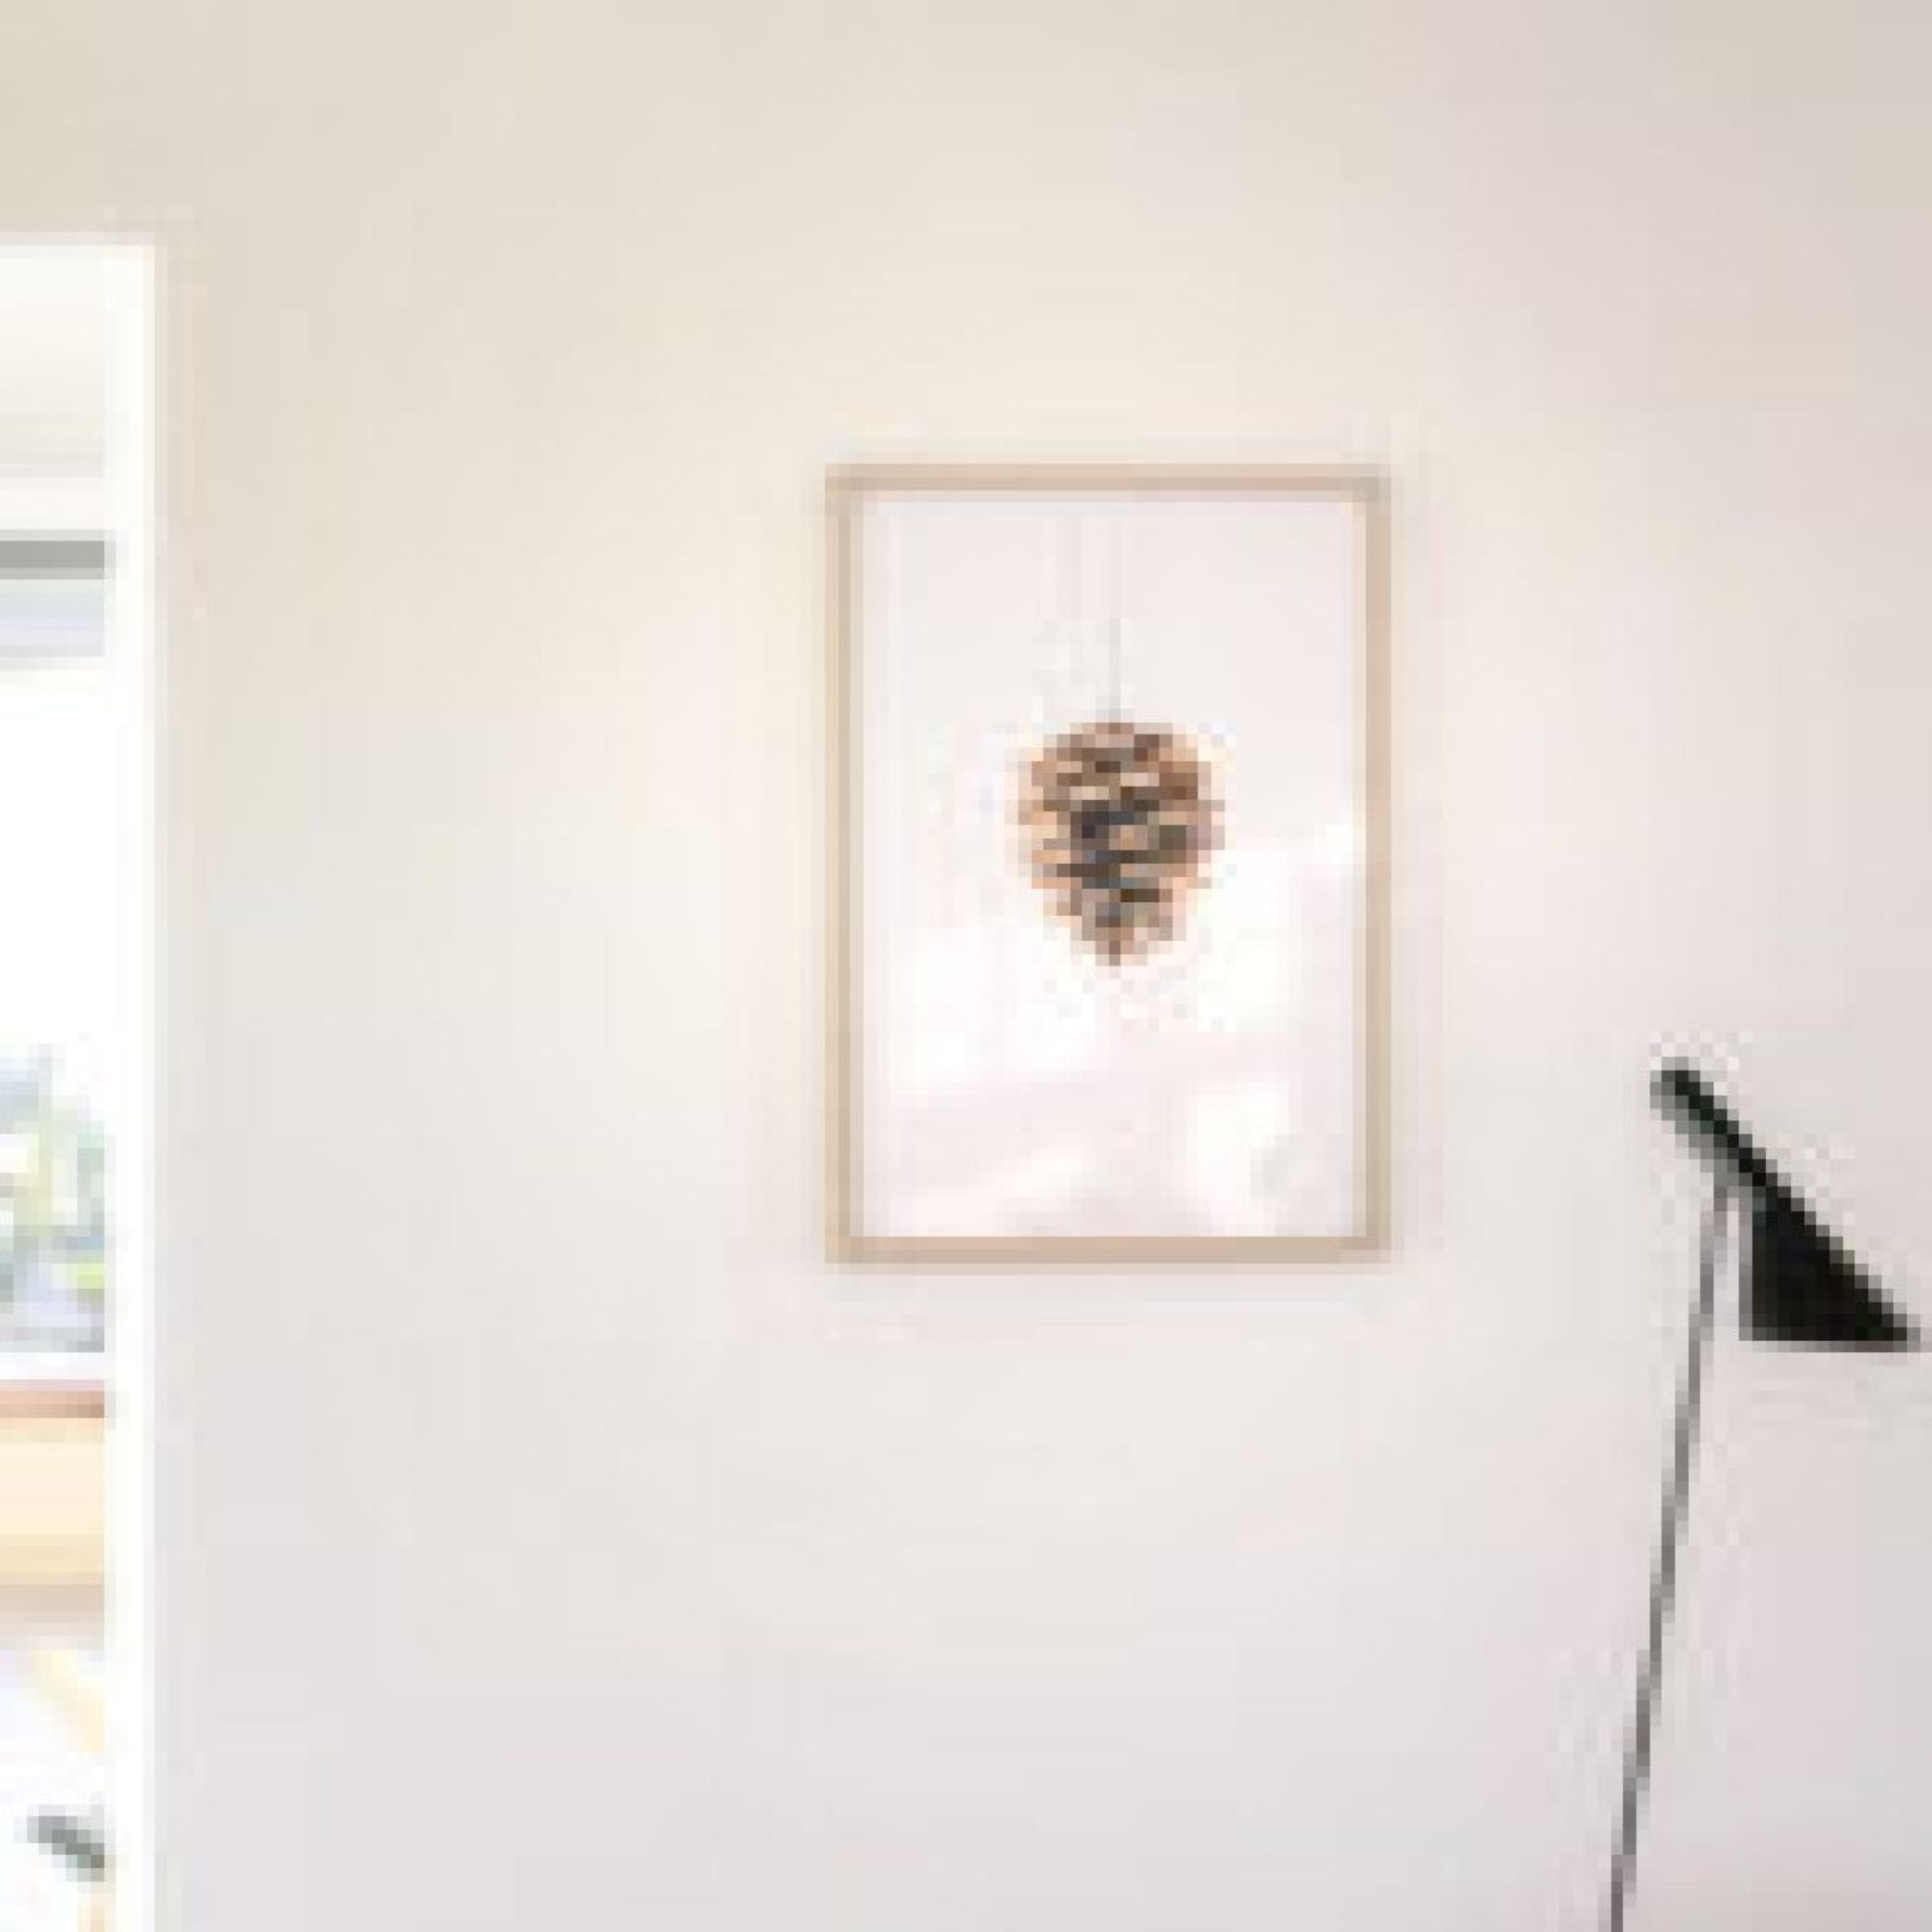 Póster clásico de cono de pino de creación, marco hecho de madera clara de 70x100 cm, fondo blanco